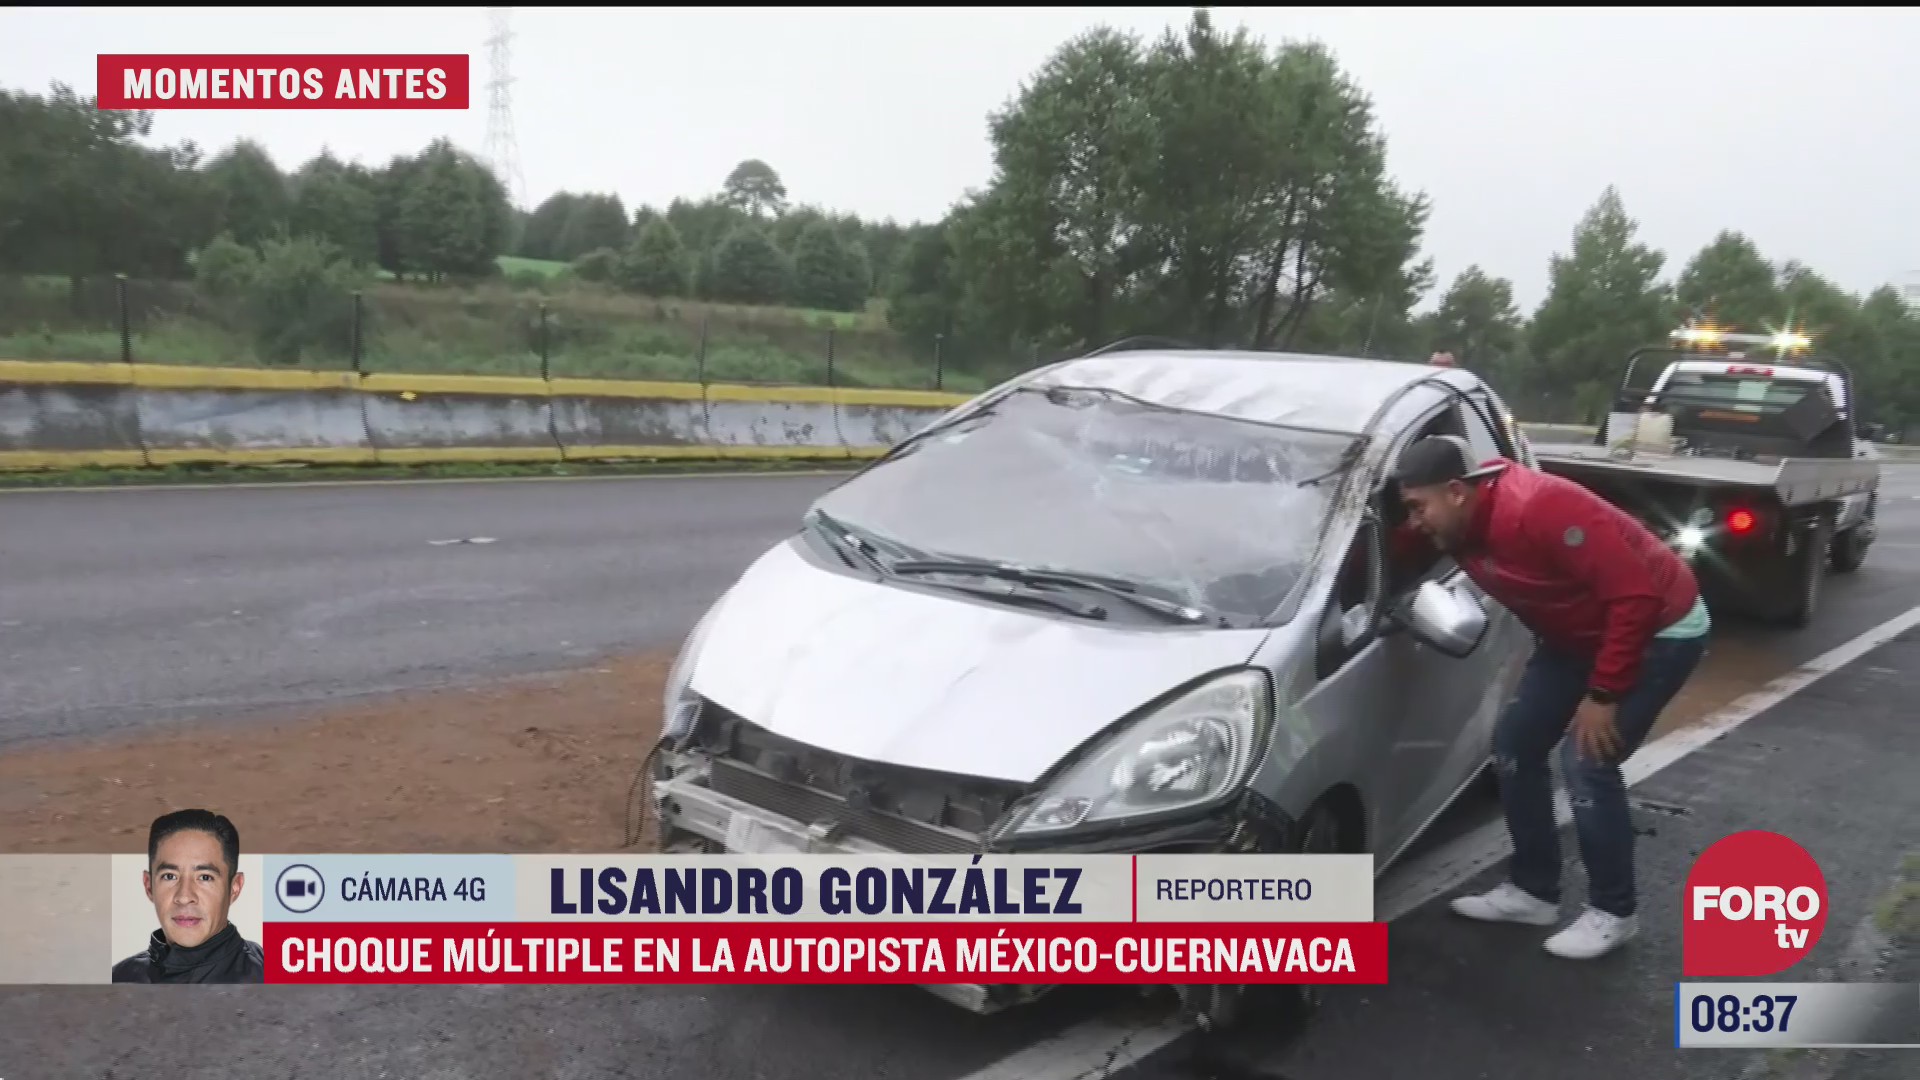 se registra choque multiple en la autopista mexico cuernavaca